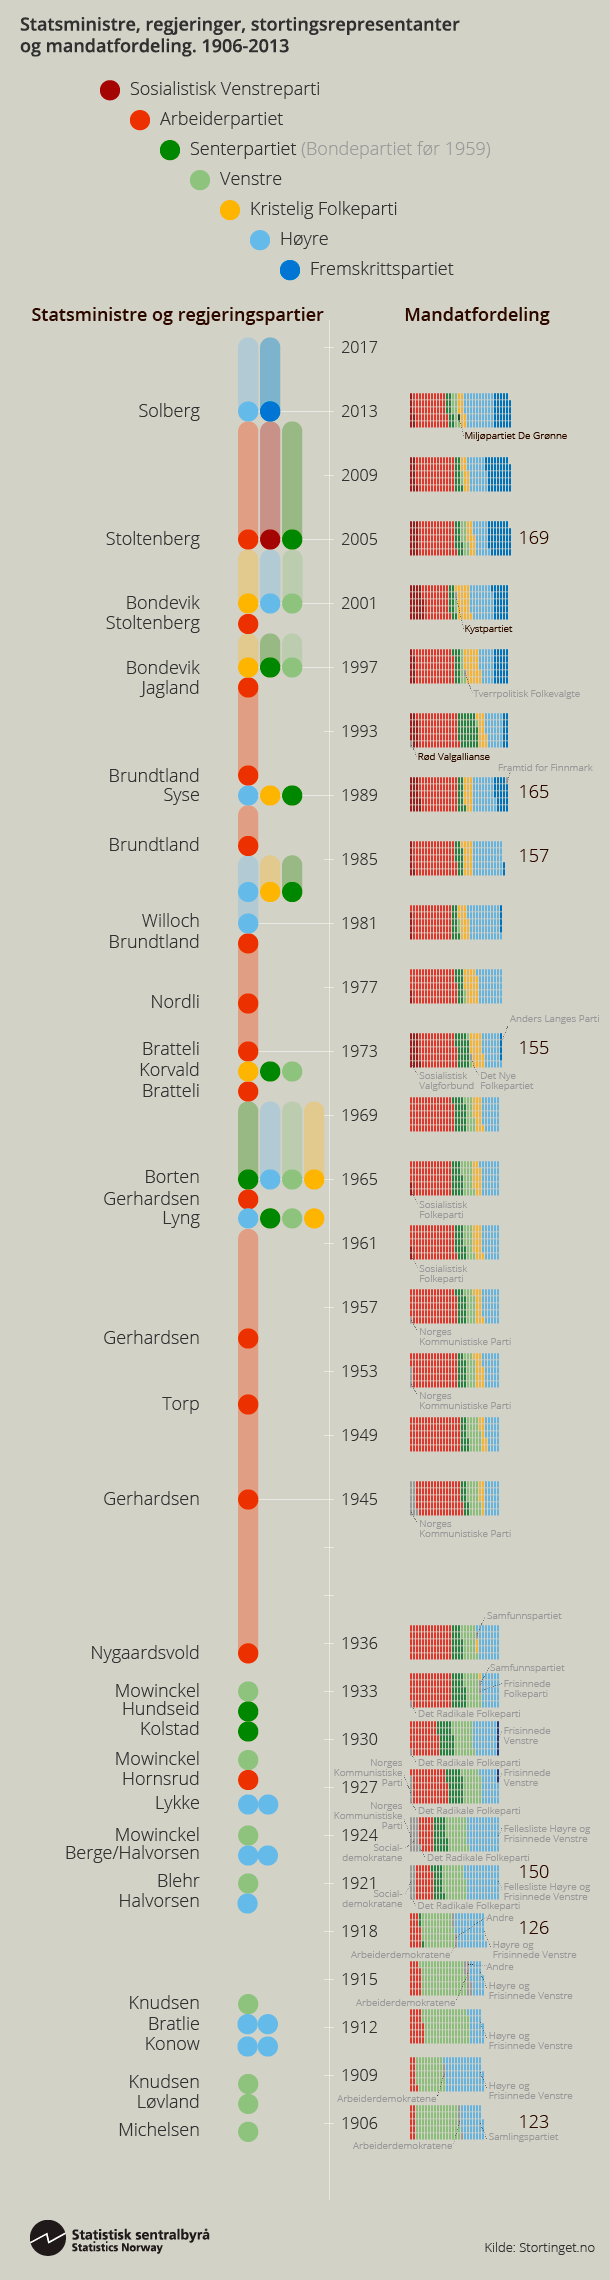 Infografikk: Statsministre, regjeringer, stortingsrepresentanter og mandatfordeling, 1906-2013. Klikk på bildet for større versjon.